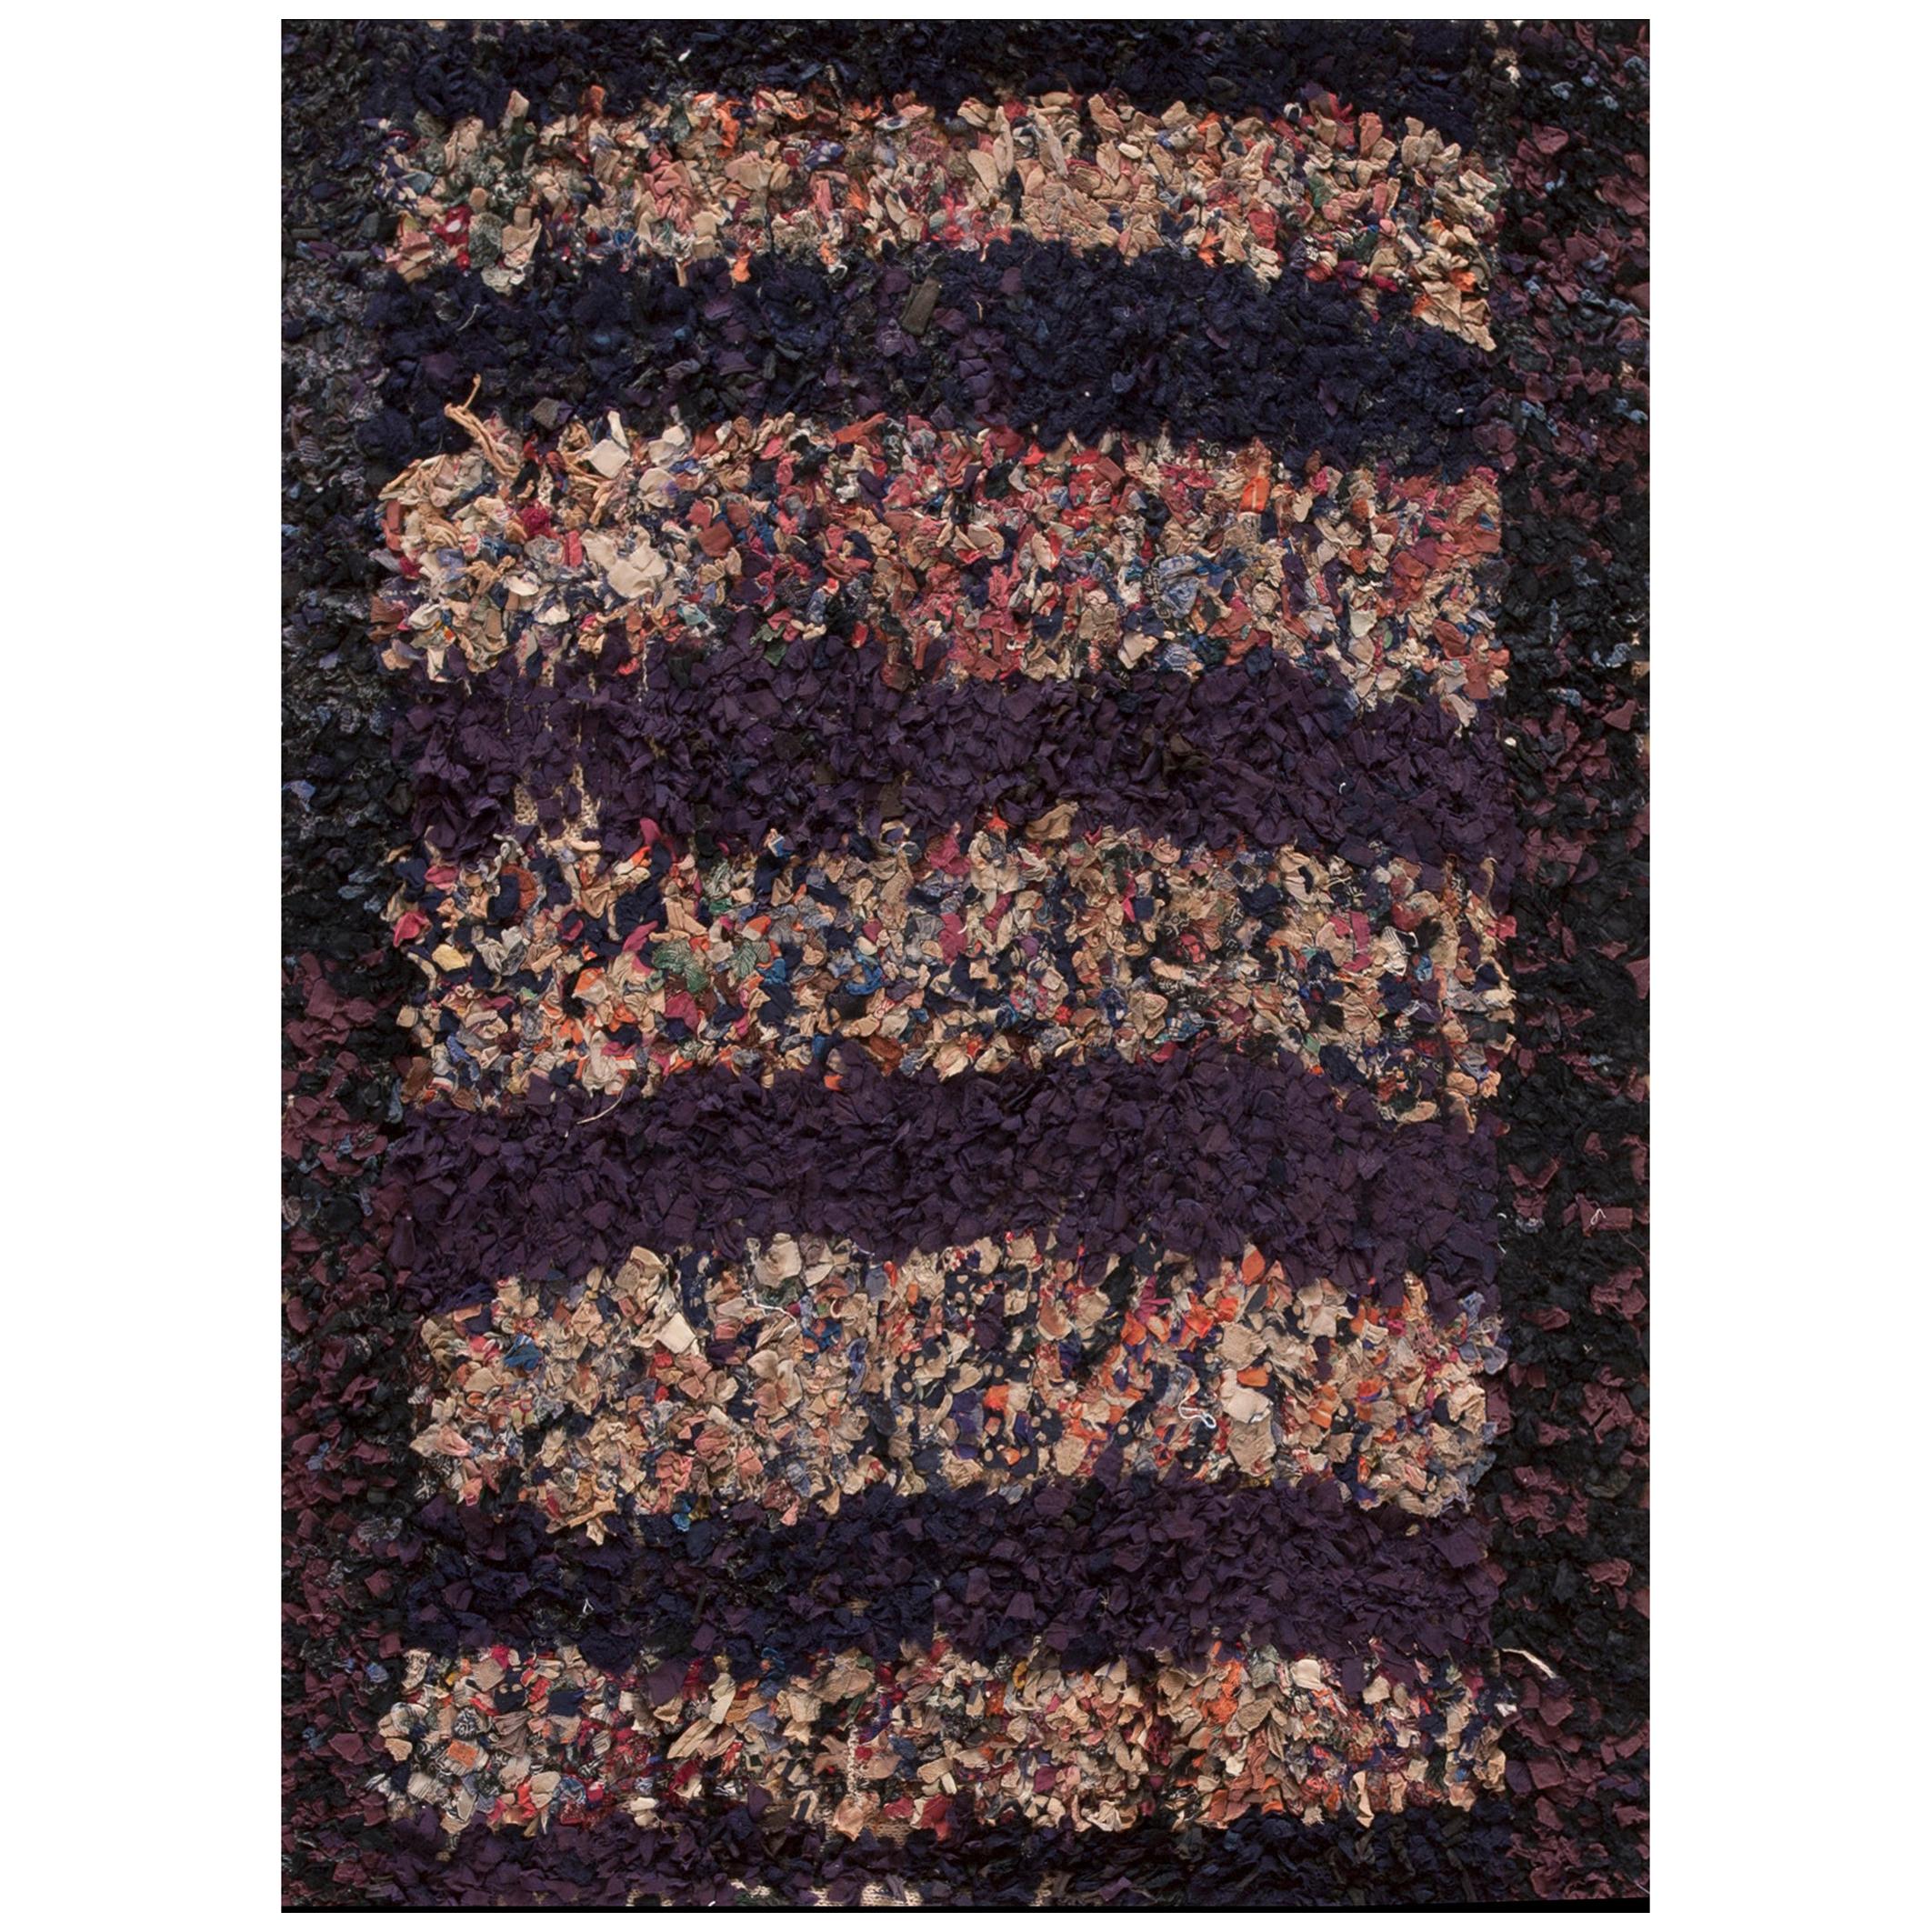 Amerikanischer Shaker Rager-Teppich des späten 19. Jahrhunderts ( 2' x 3' - 60 x 90 cm)